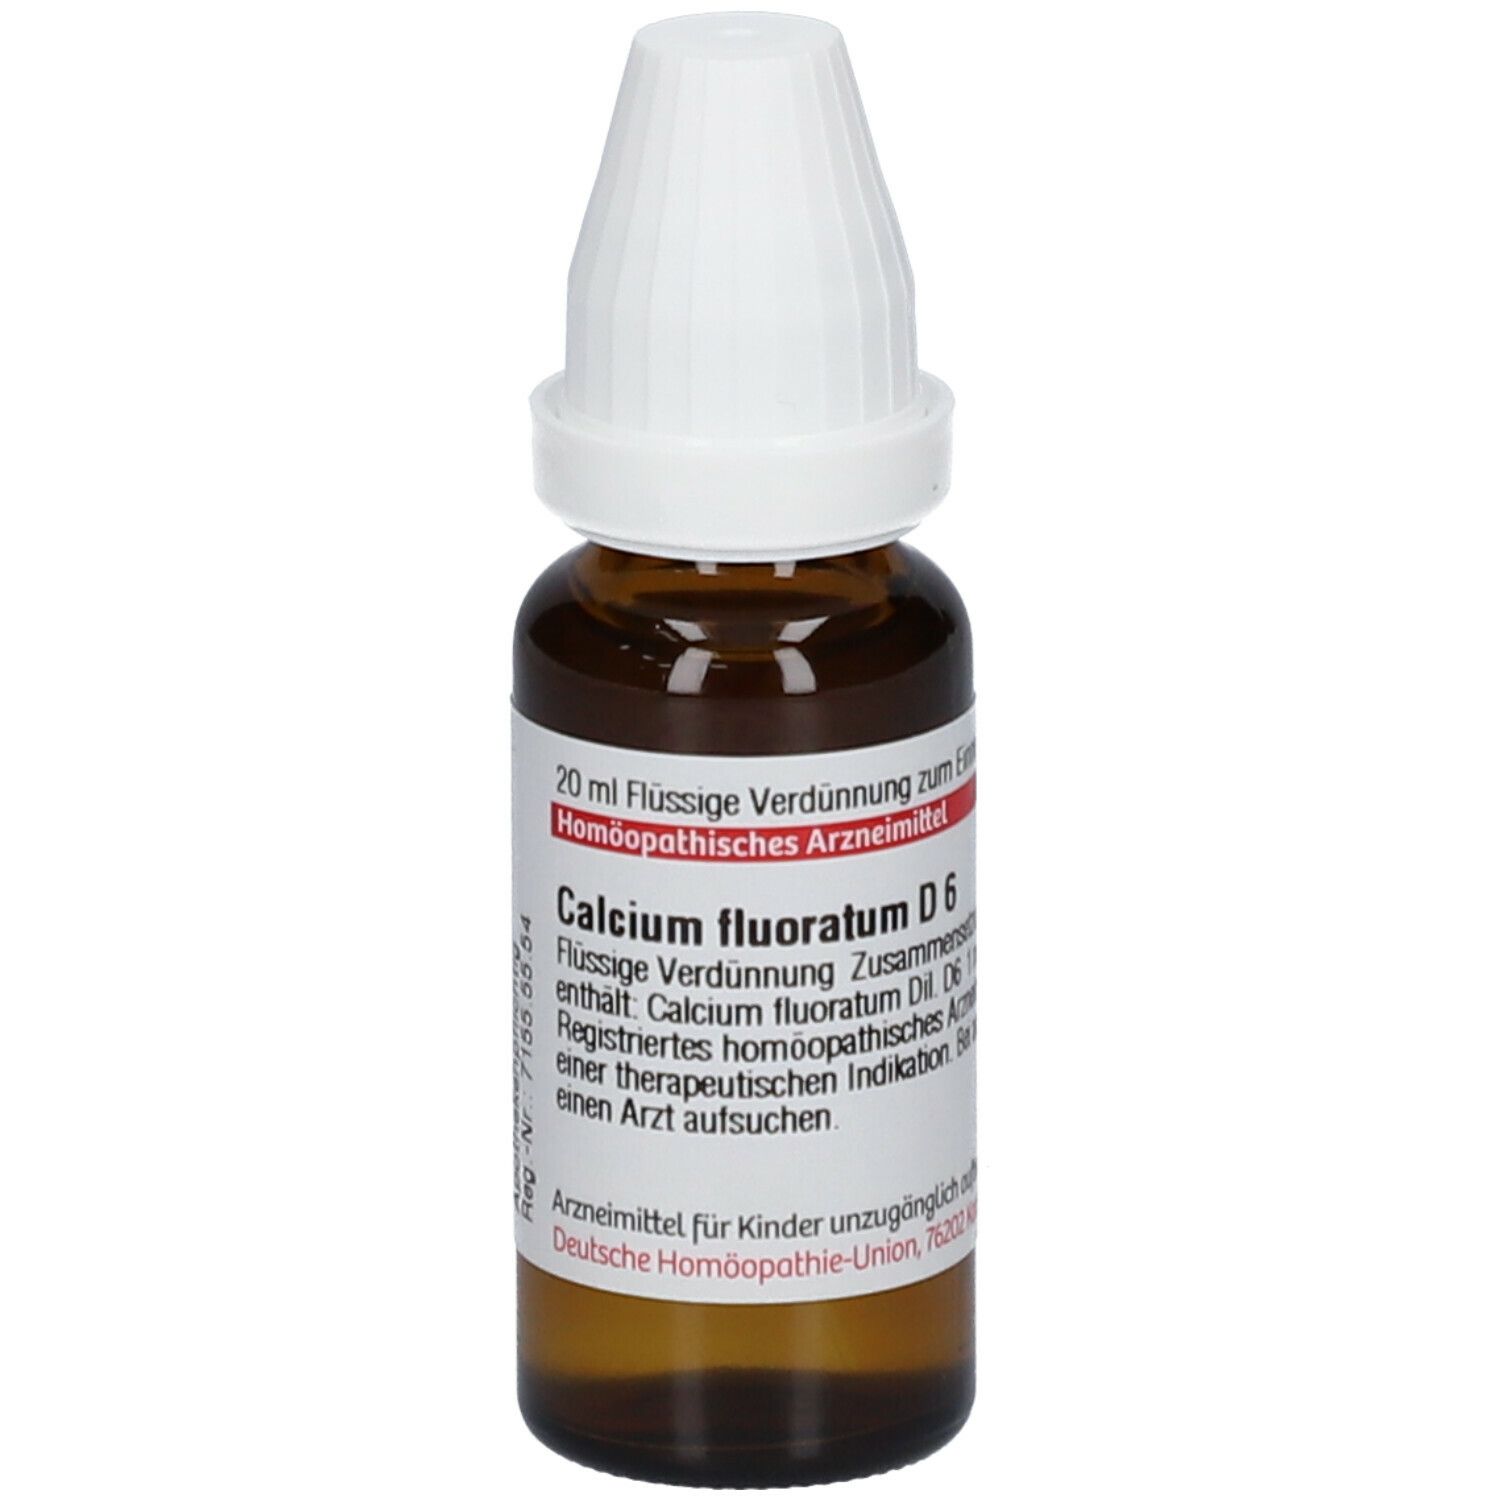 DHU Calcium Fluoratum D6